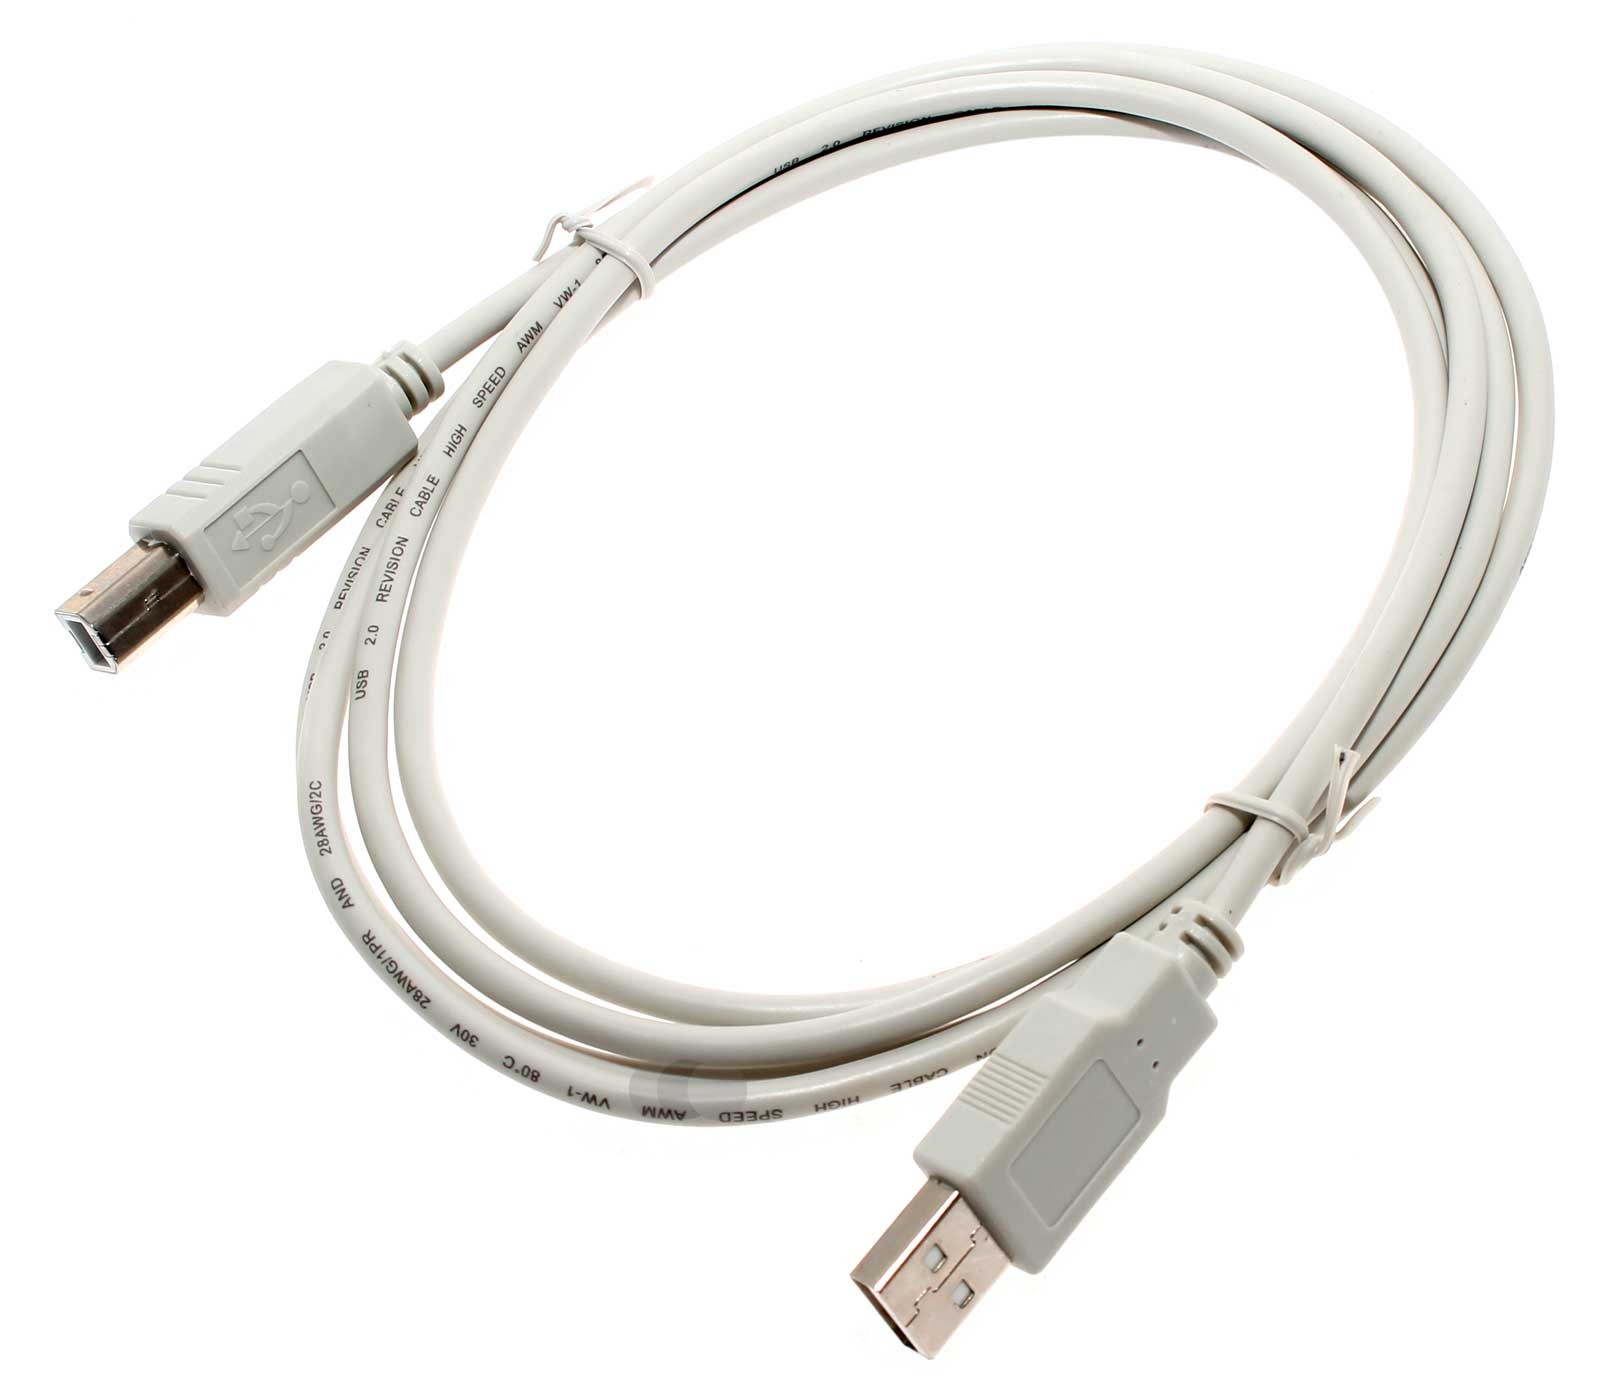 1,8m USB 2.0 Kabel Stecker Typ A auf Stecker Typ B, Drucker